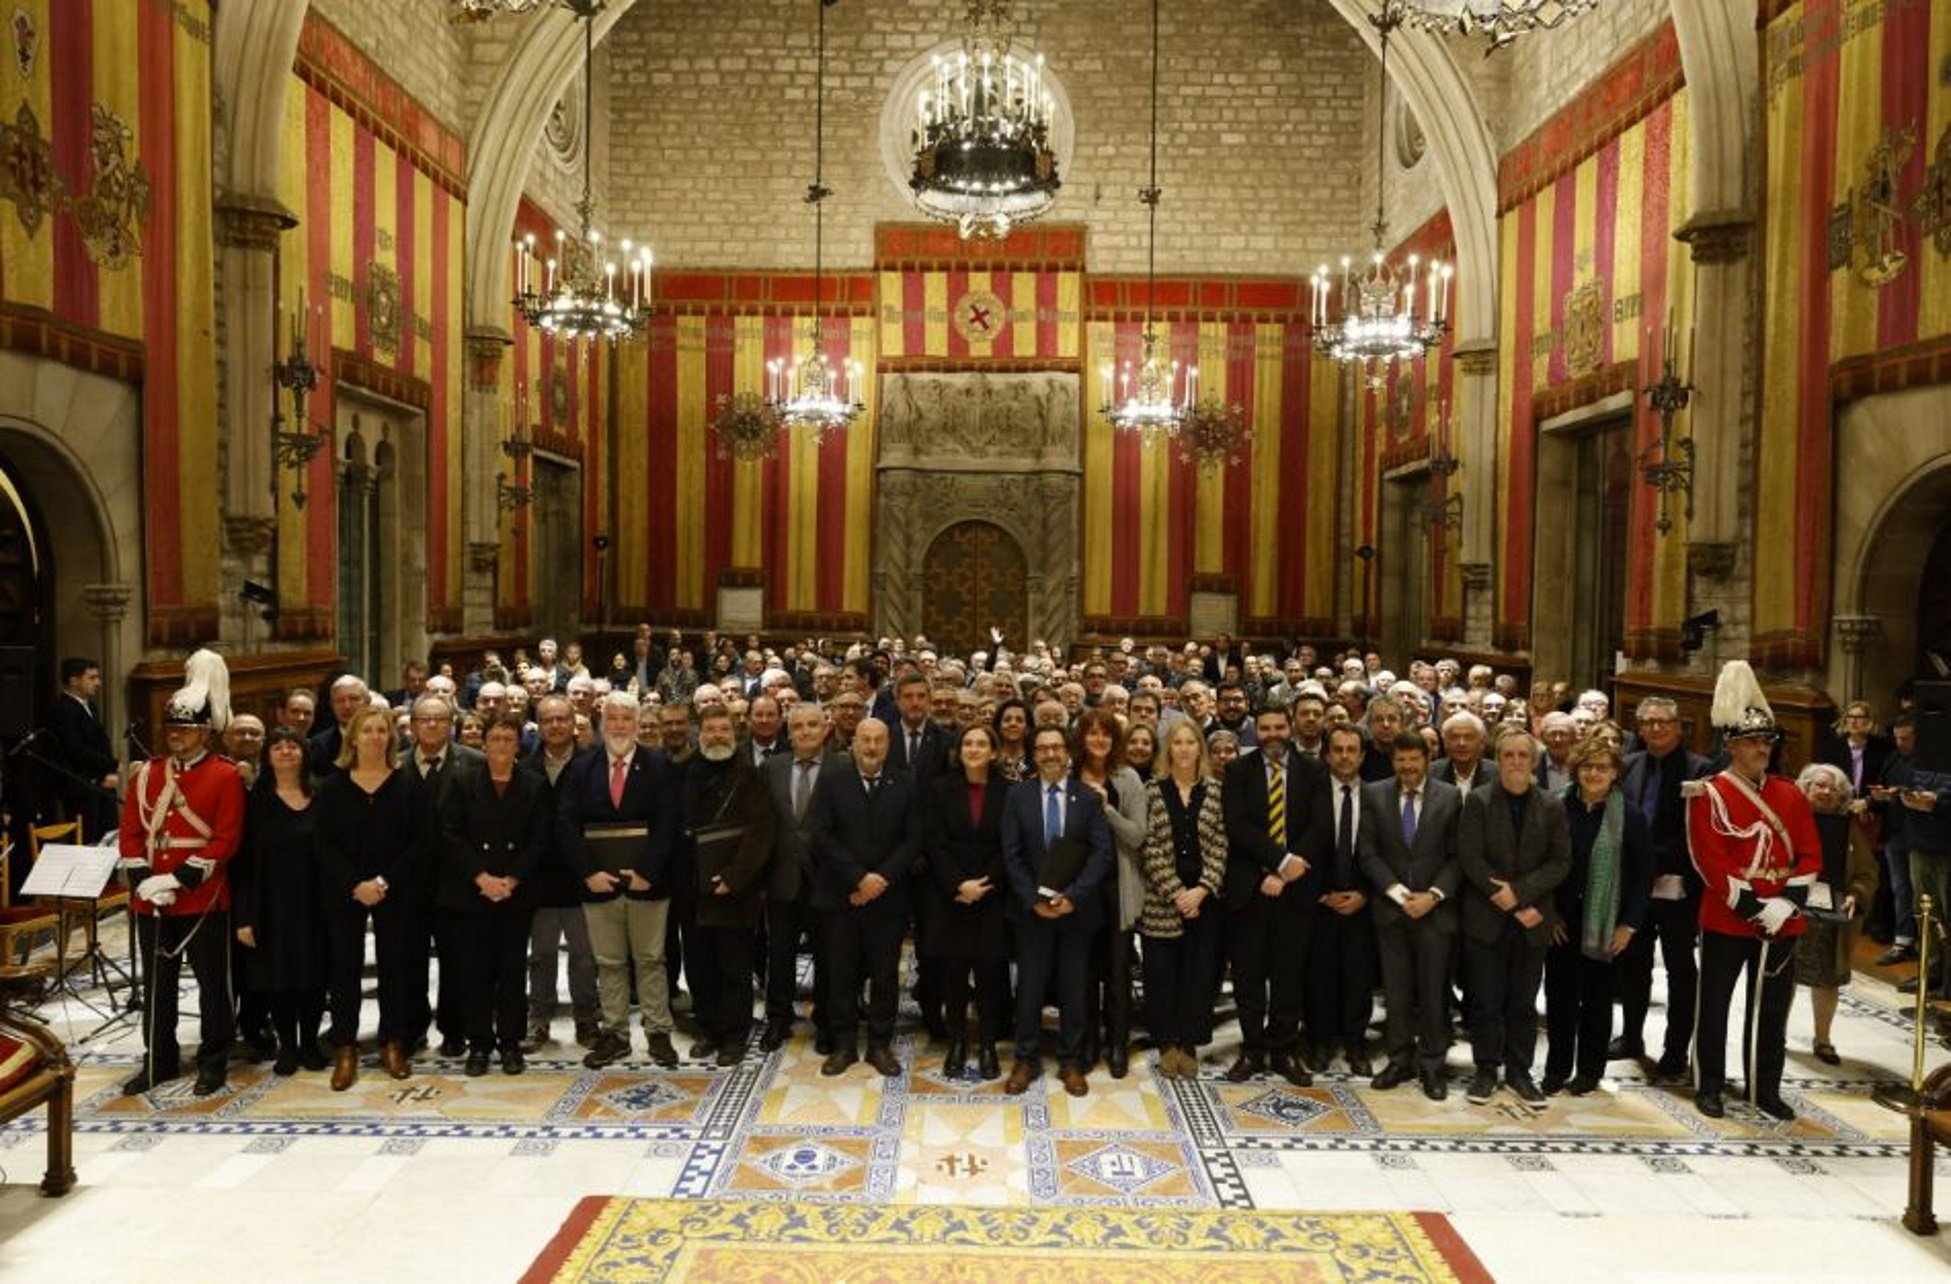 La Comunidad Israelita de Barcelona planta a Ada Colau en un acto con instituciones centenarias